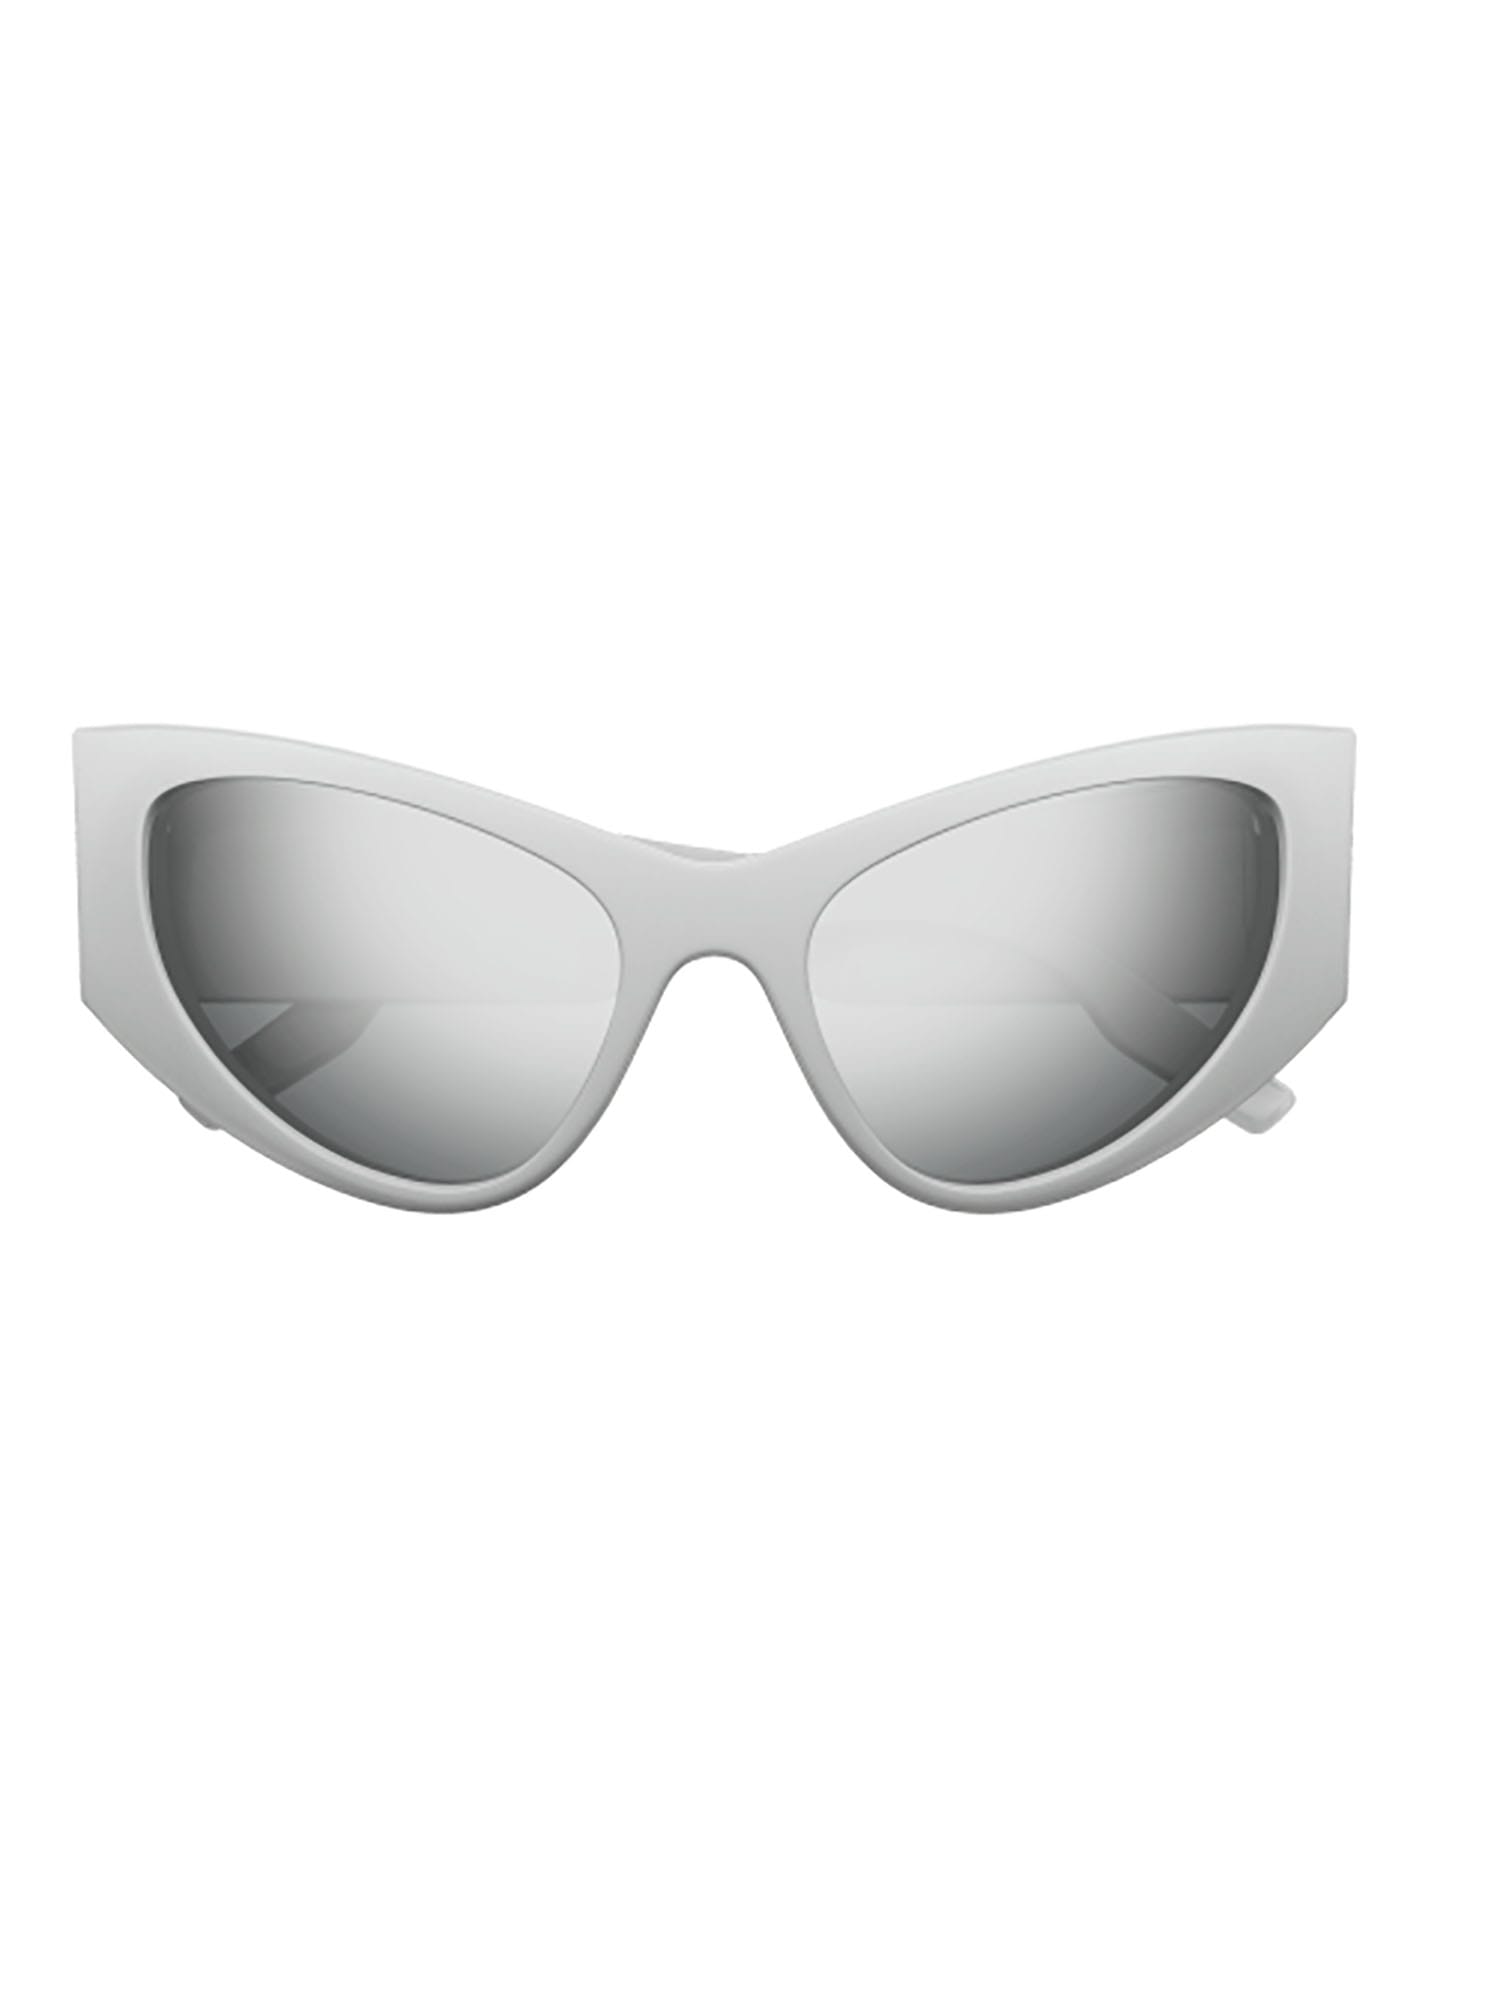 Balenciaga Bb0300s Sunglasses In Silver Silver Silver